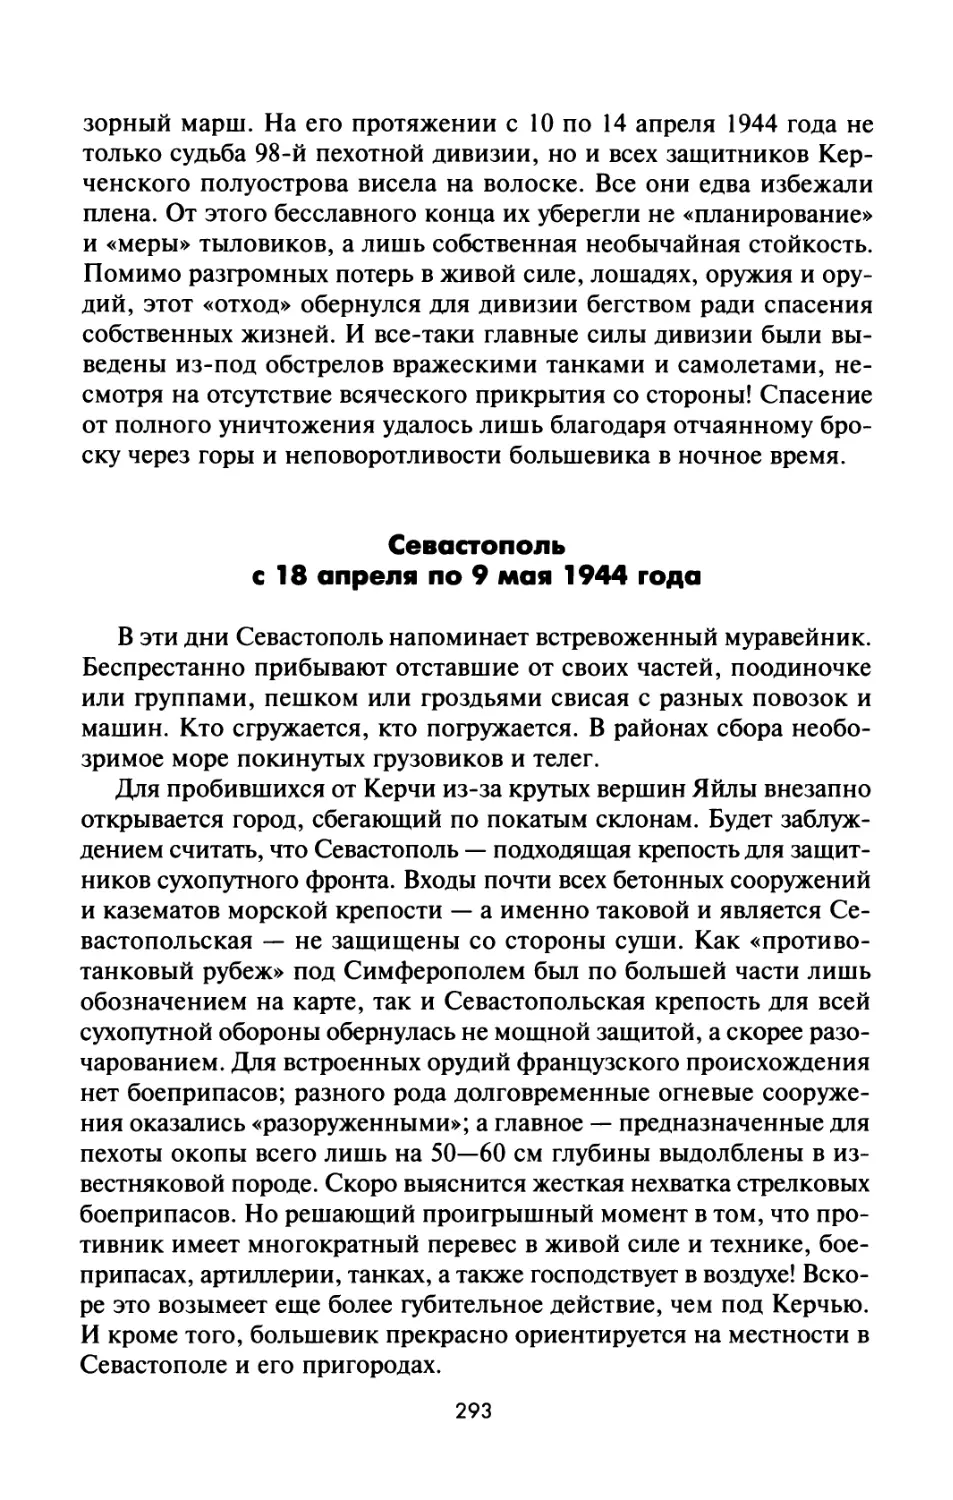 Севастополь  с  18  апреля  по  9  мая  1944  года